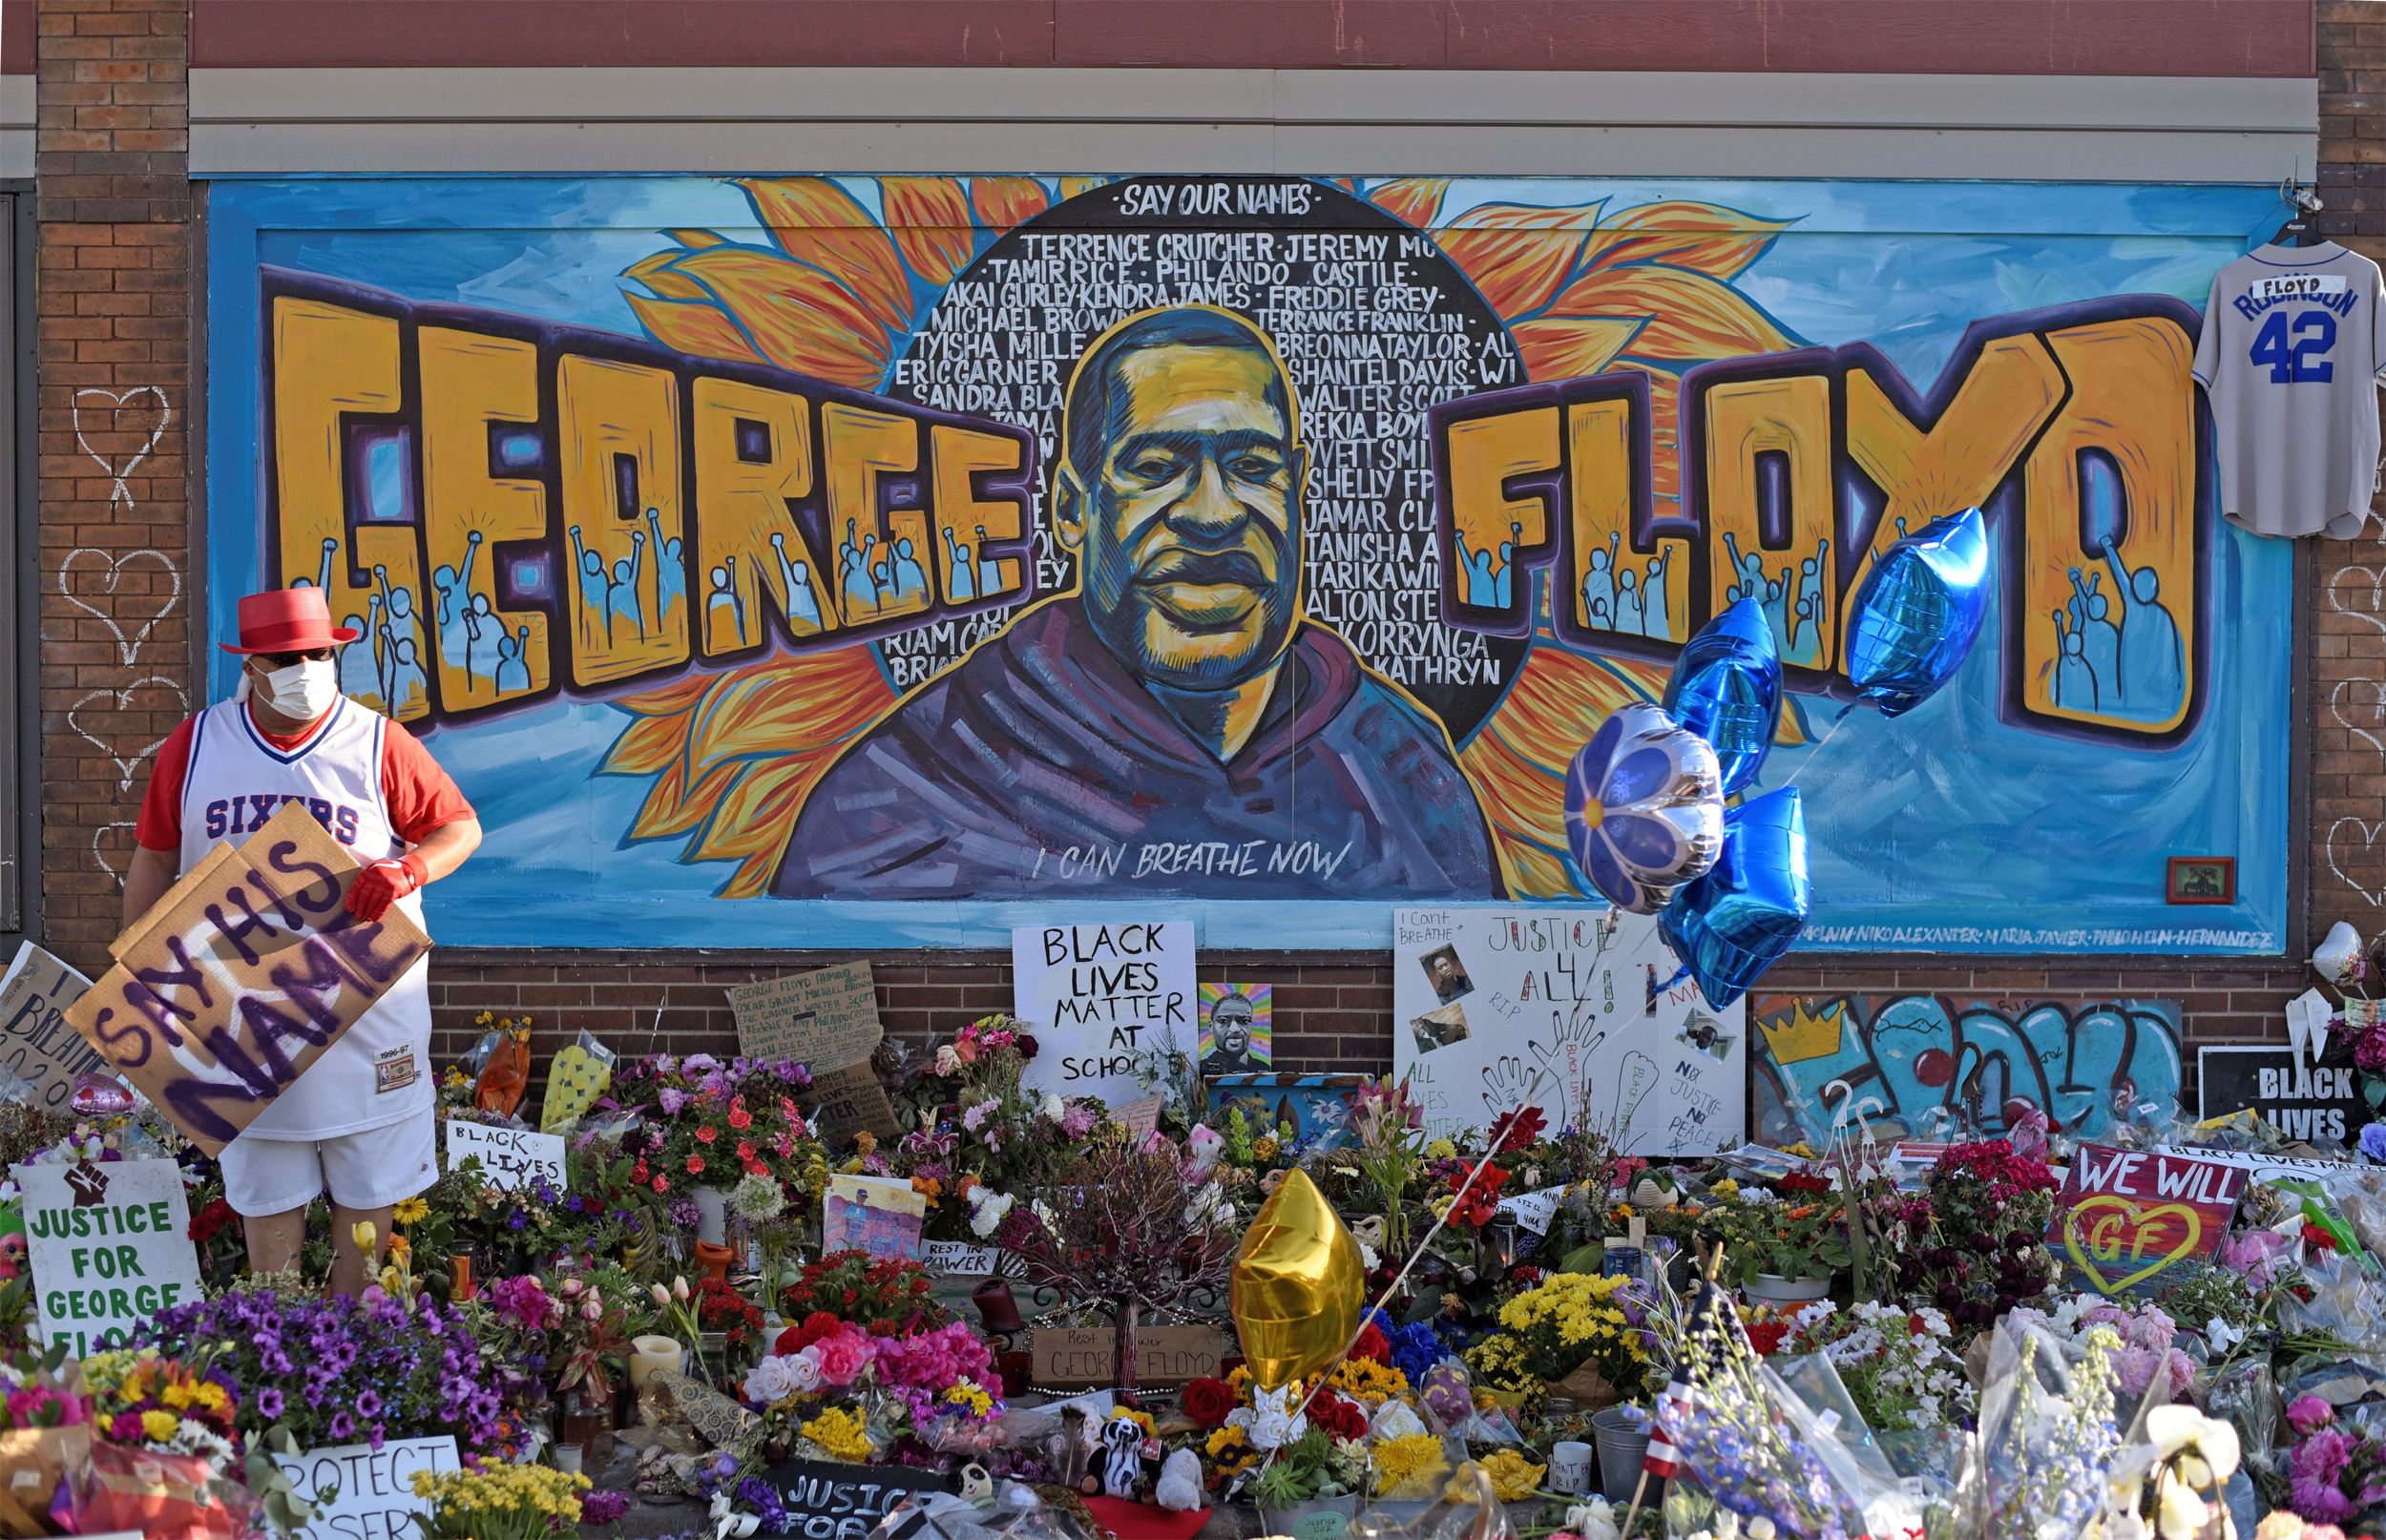 Image: Community members visit the site of George Floyd's killing